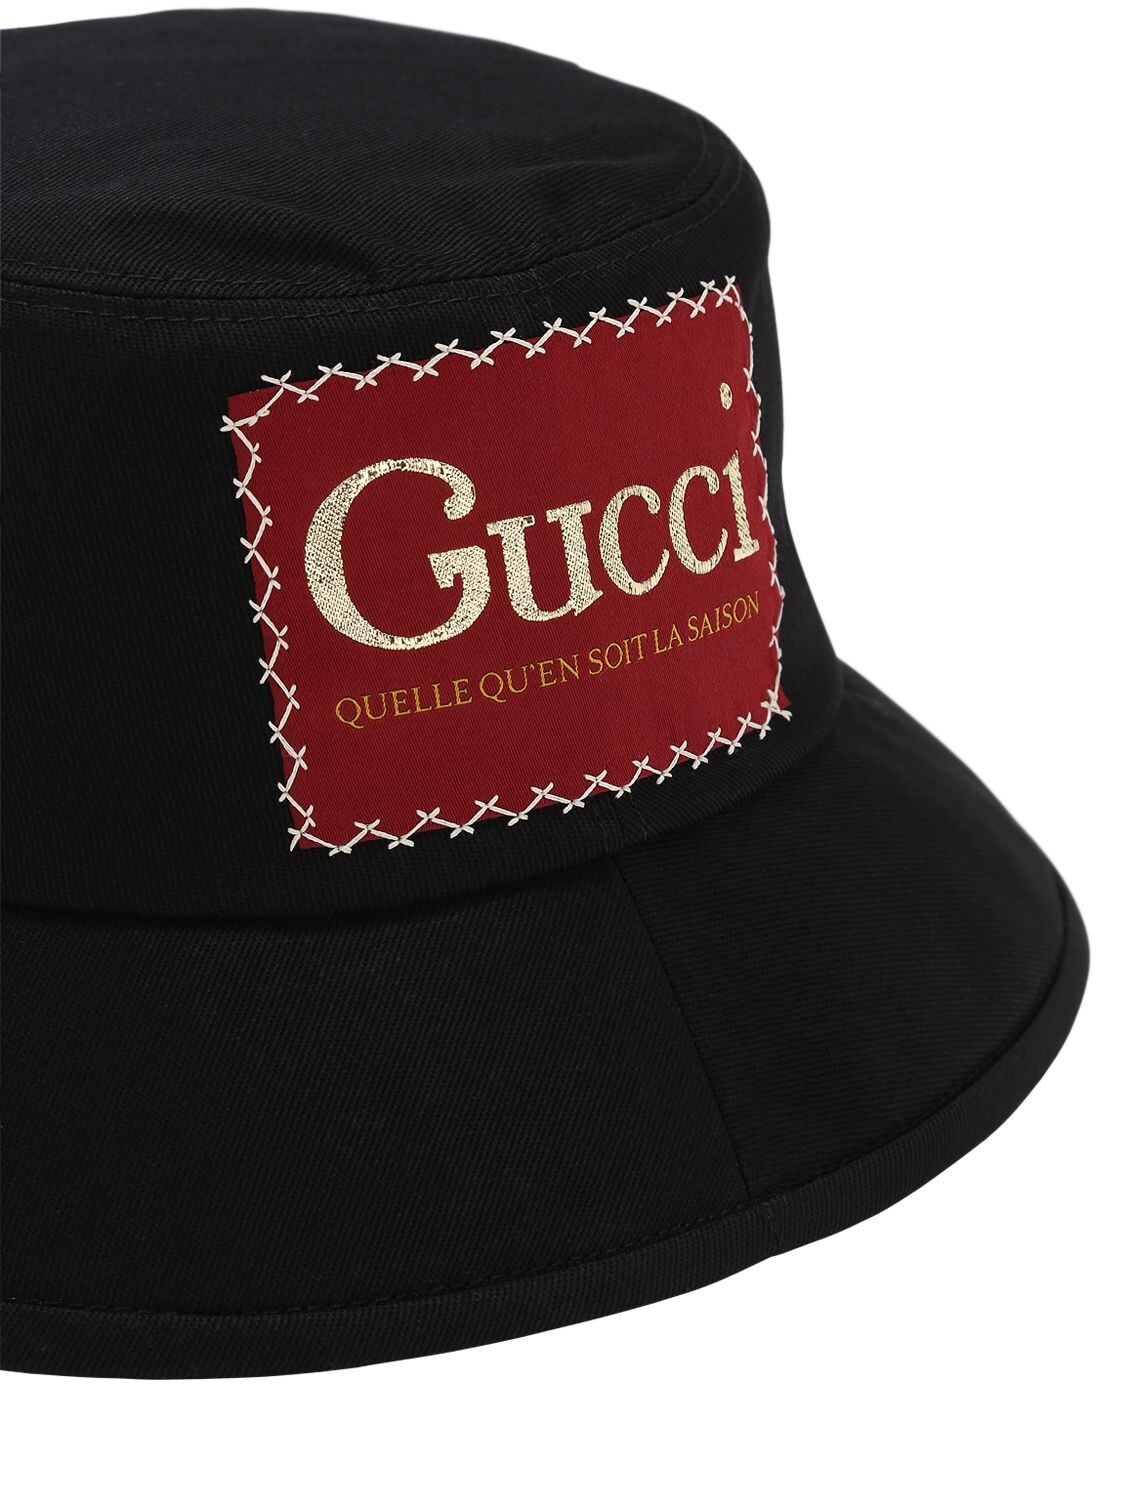 Authentic Gucci Logo Patch La Saison Cotton Bucket Hat Black size